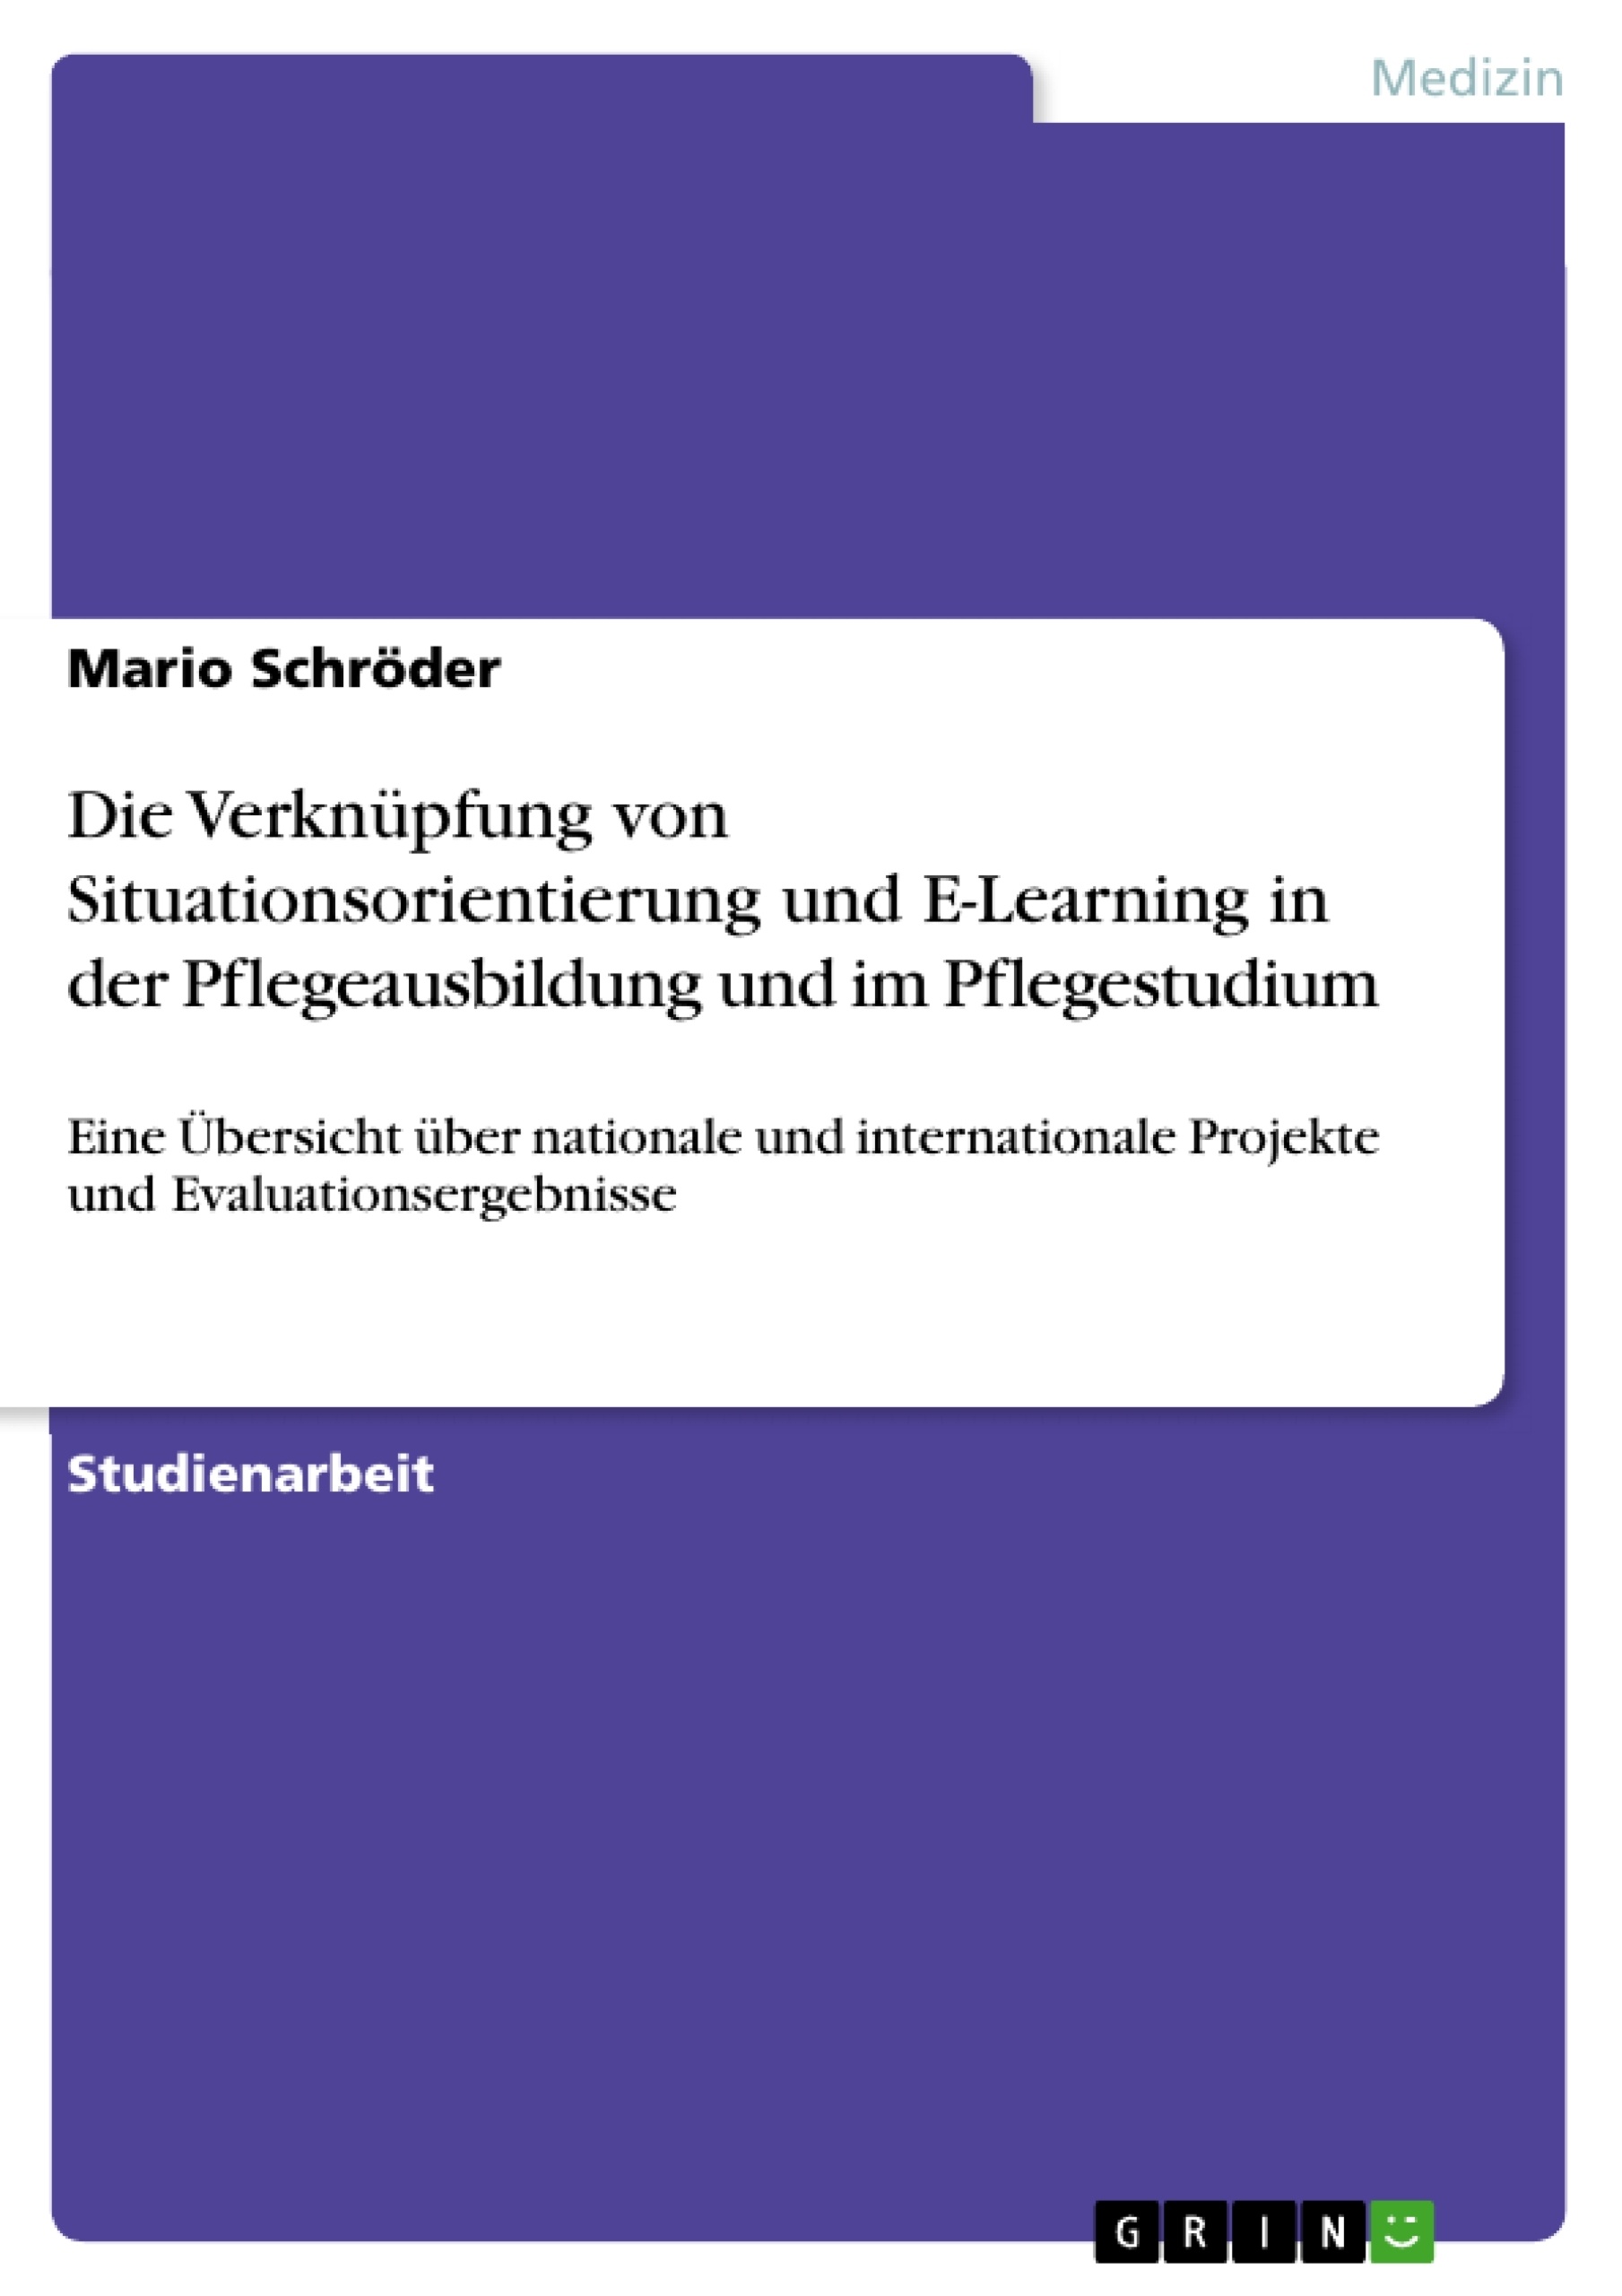 Title: Die Verknüpfung von Situationsorientierung und E-Learning in der Pflegeausbildung und im Pflegestudium